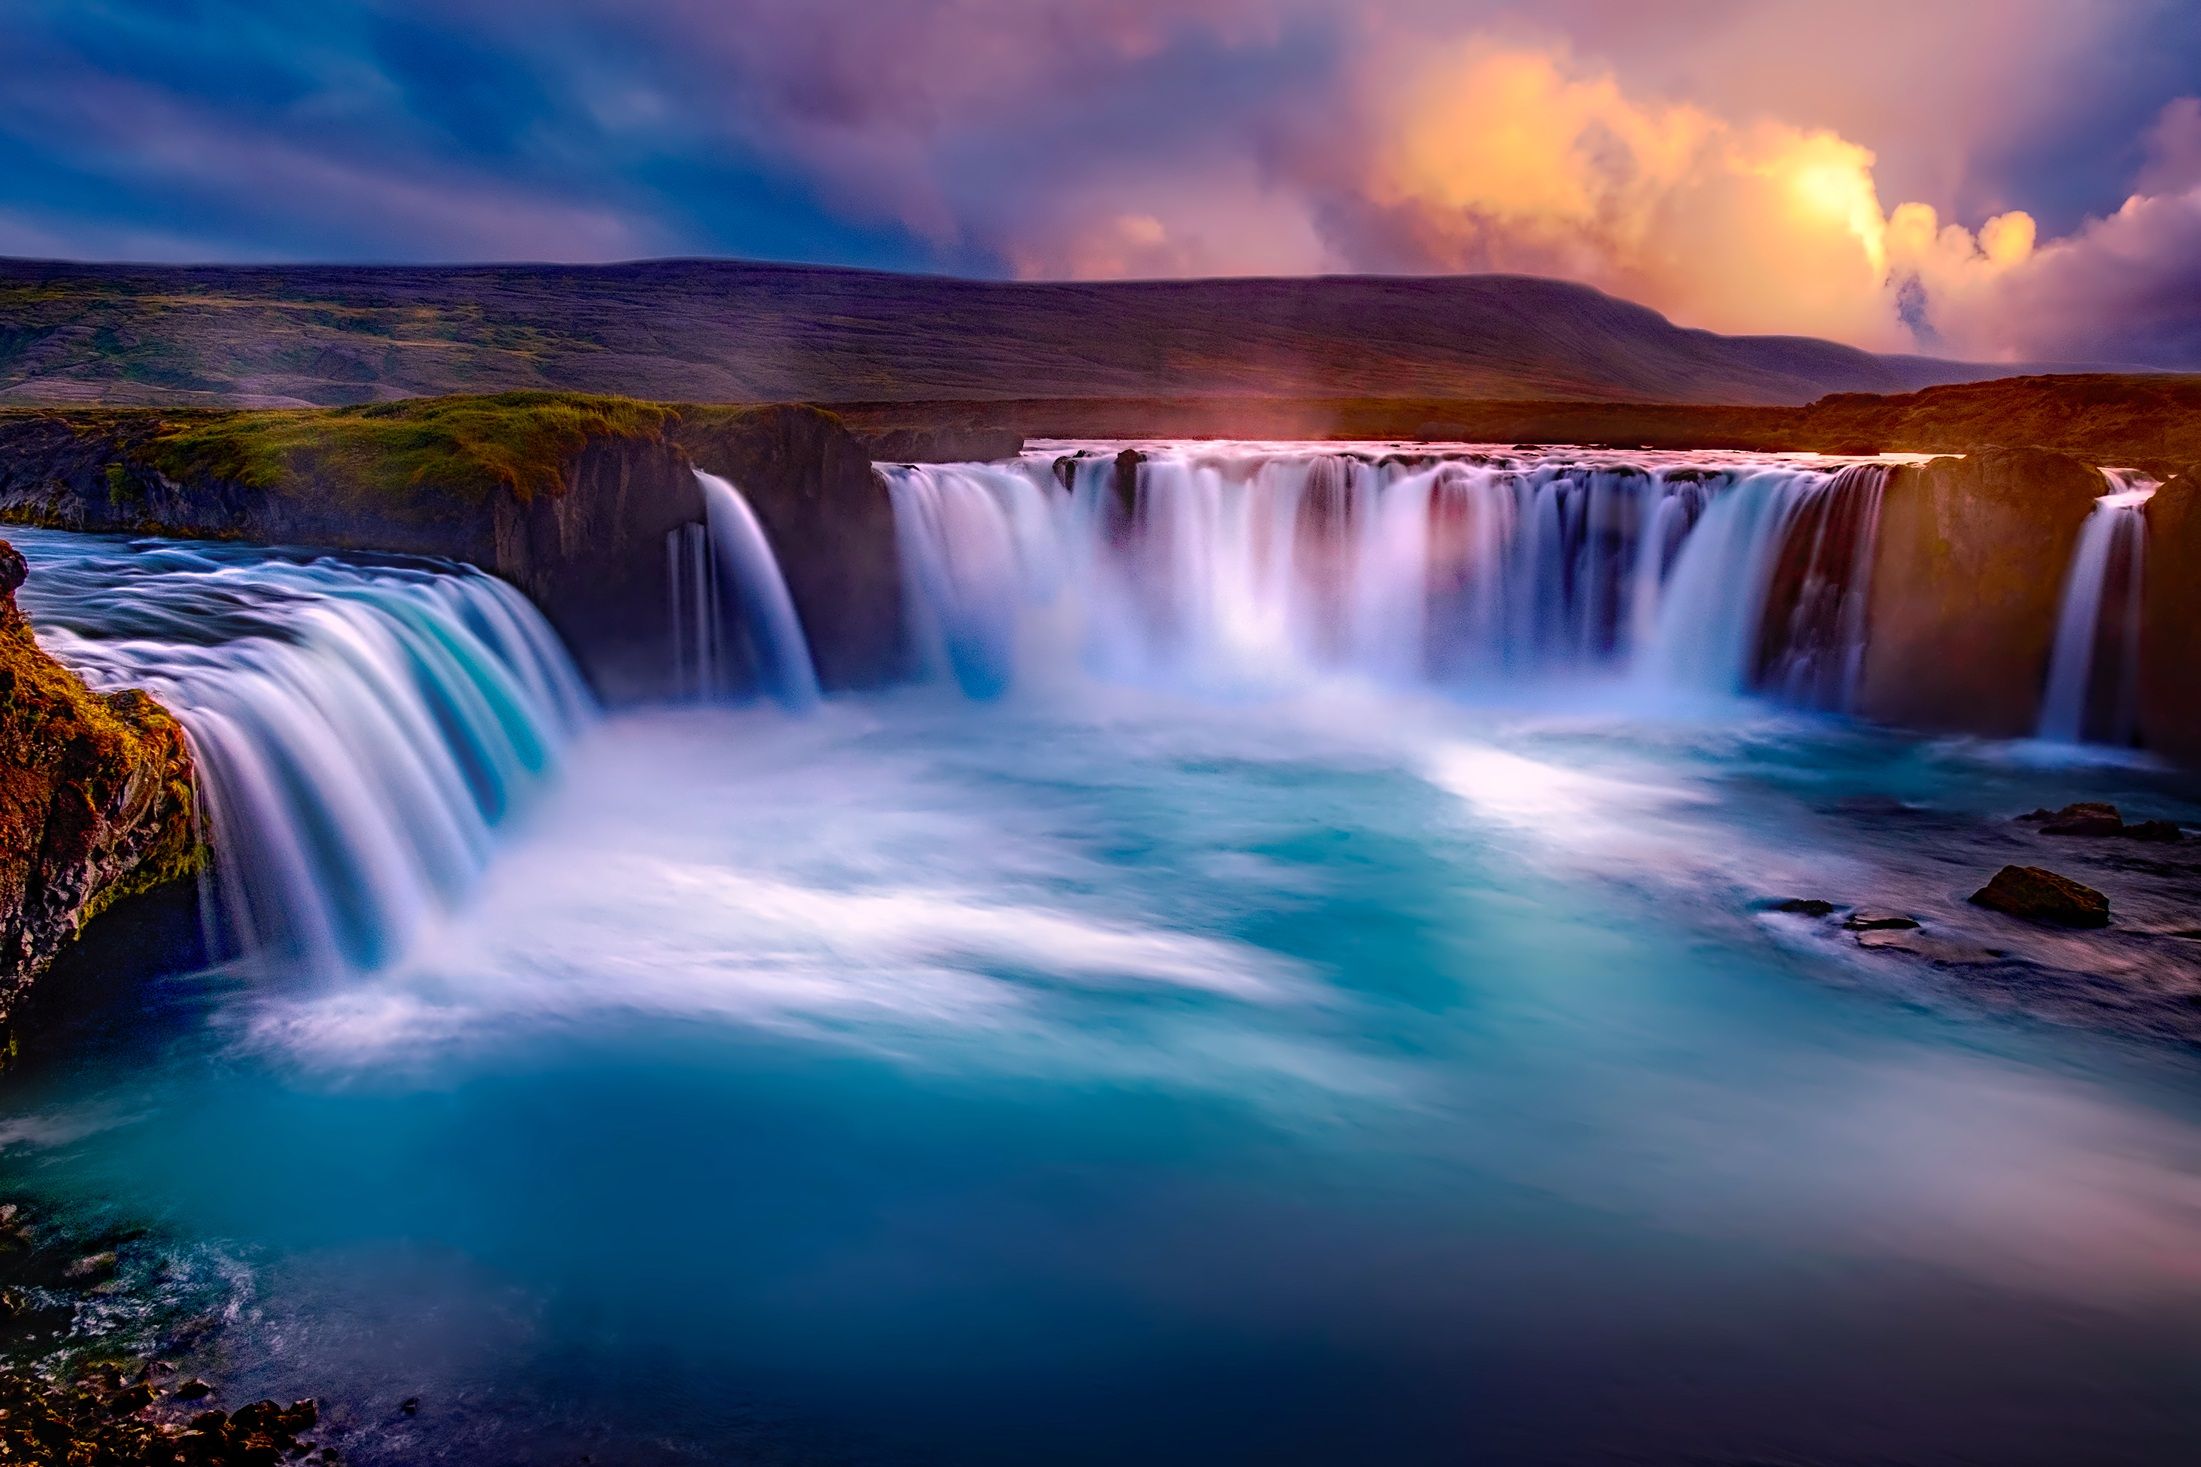 Gooafoss Iceland Waterfall iPad Air HD 4k Wallpaper